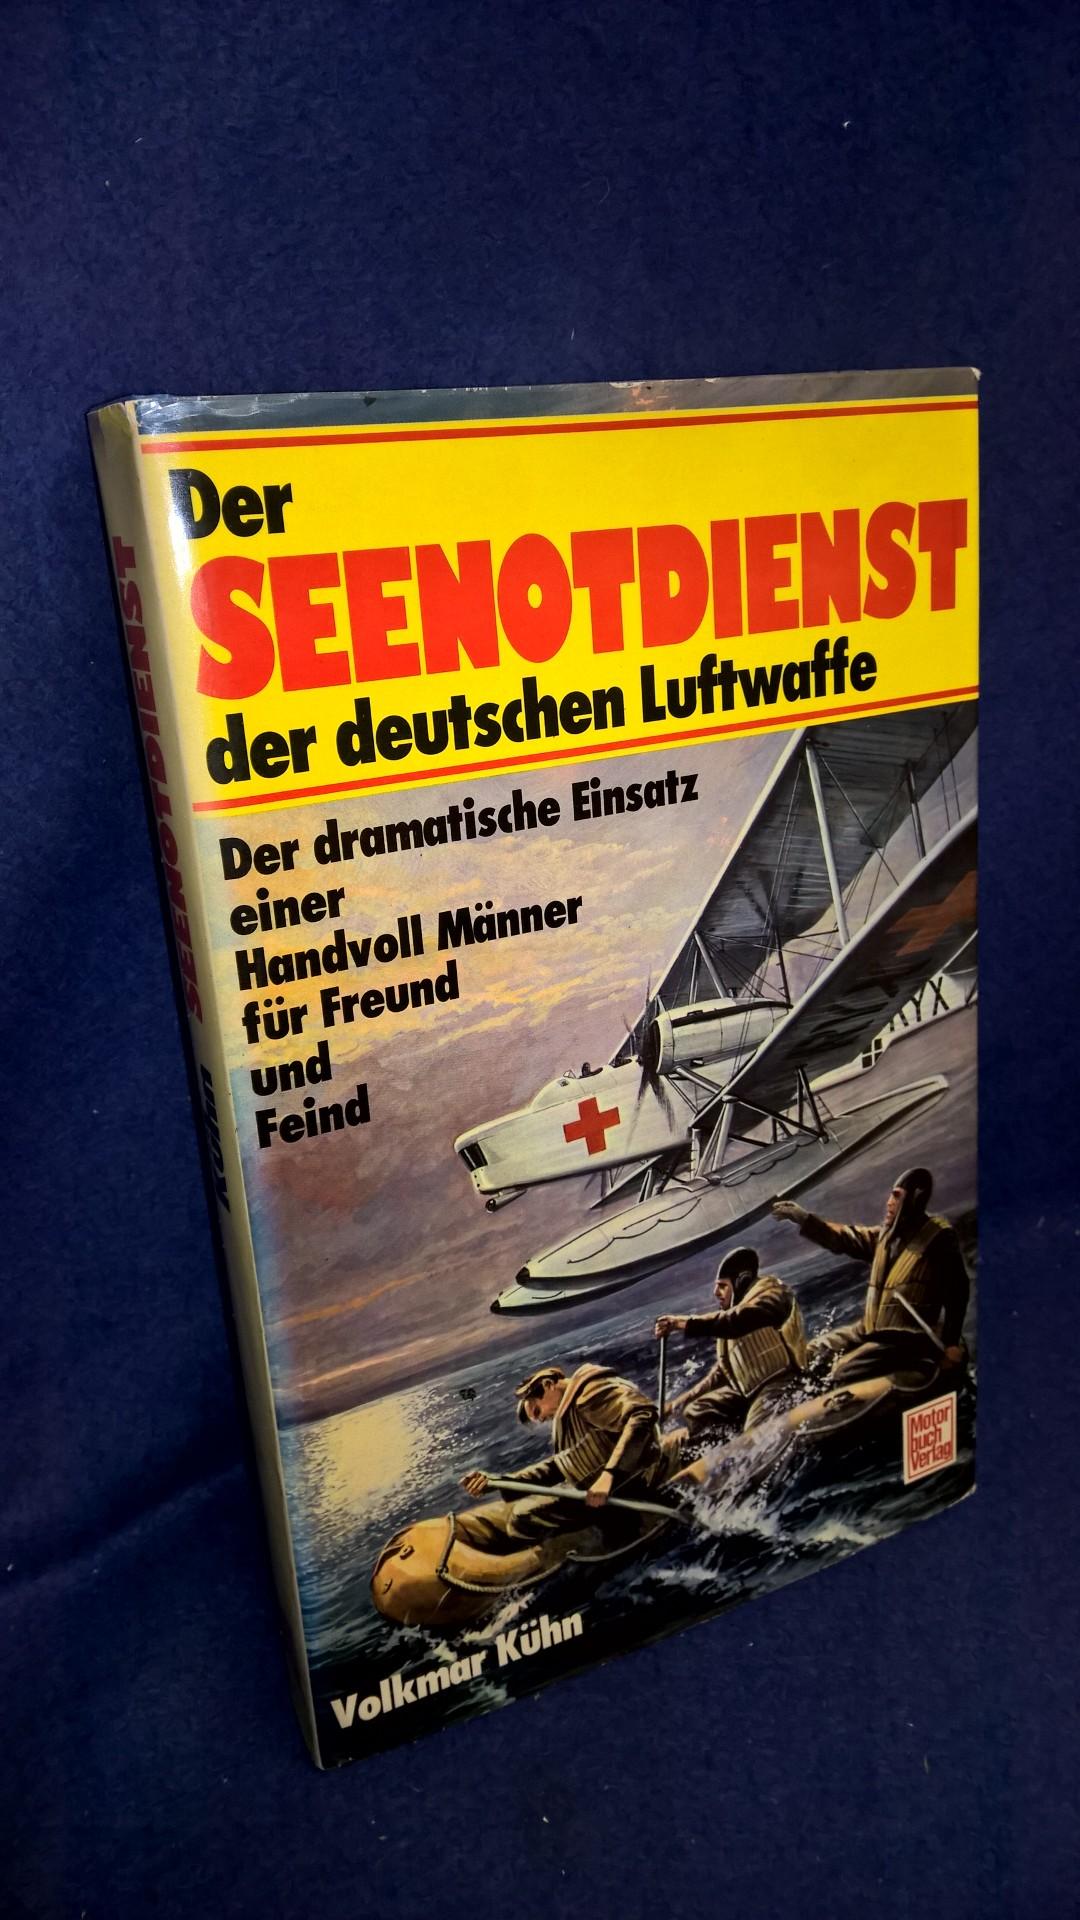 Der Seenotdienst der deutschen Luftwaffe. Der dramatatische Einsatz einer Handvoll Männer für Freund und Feind.